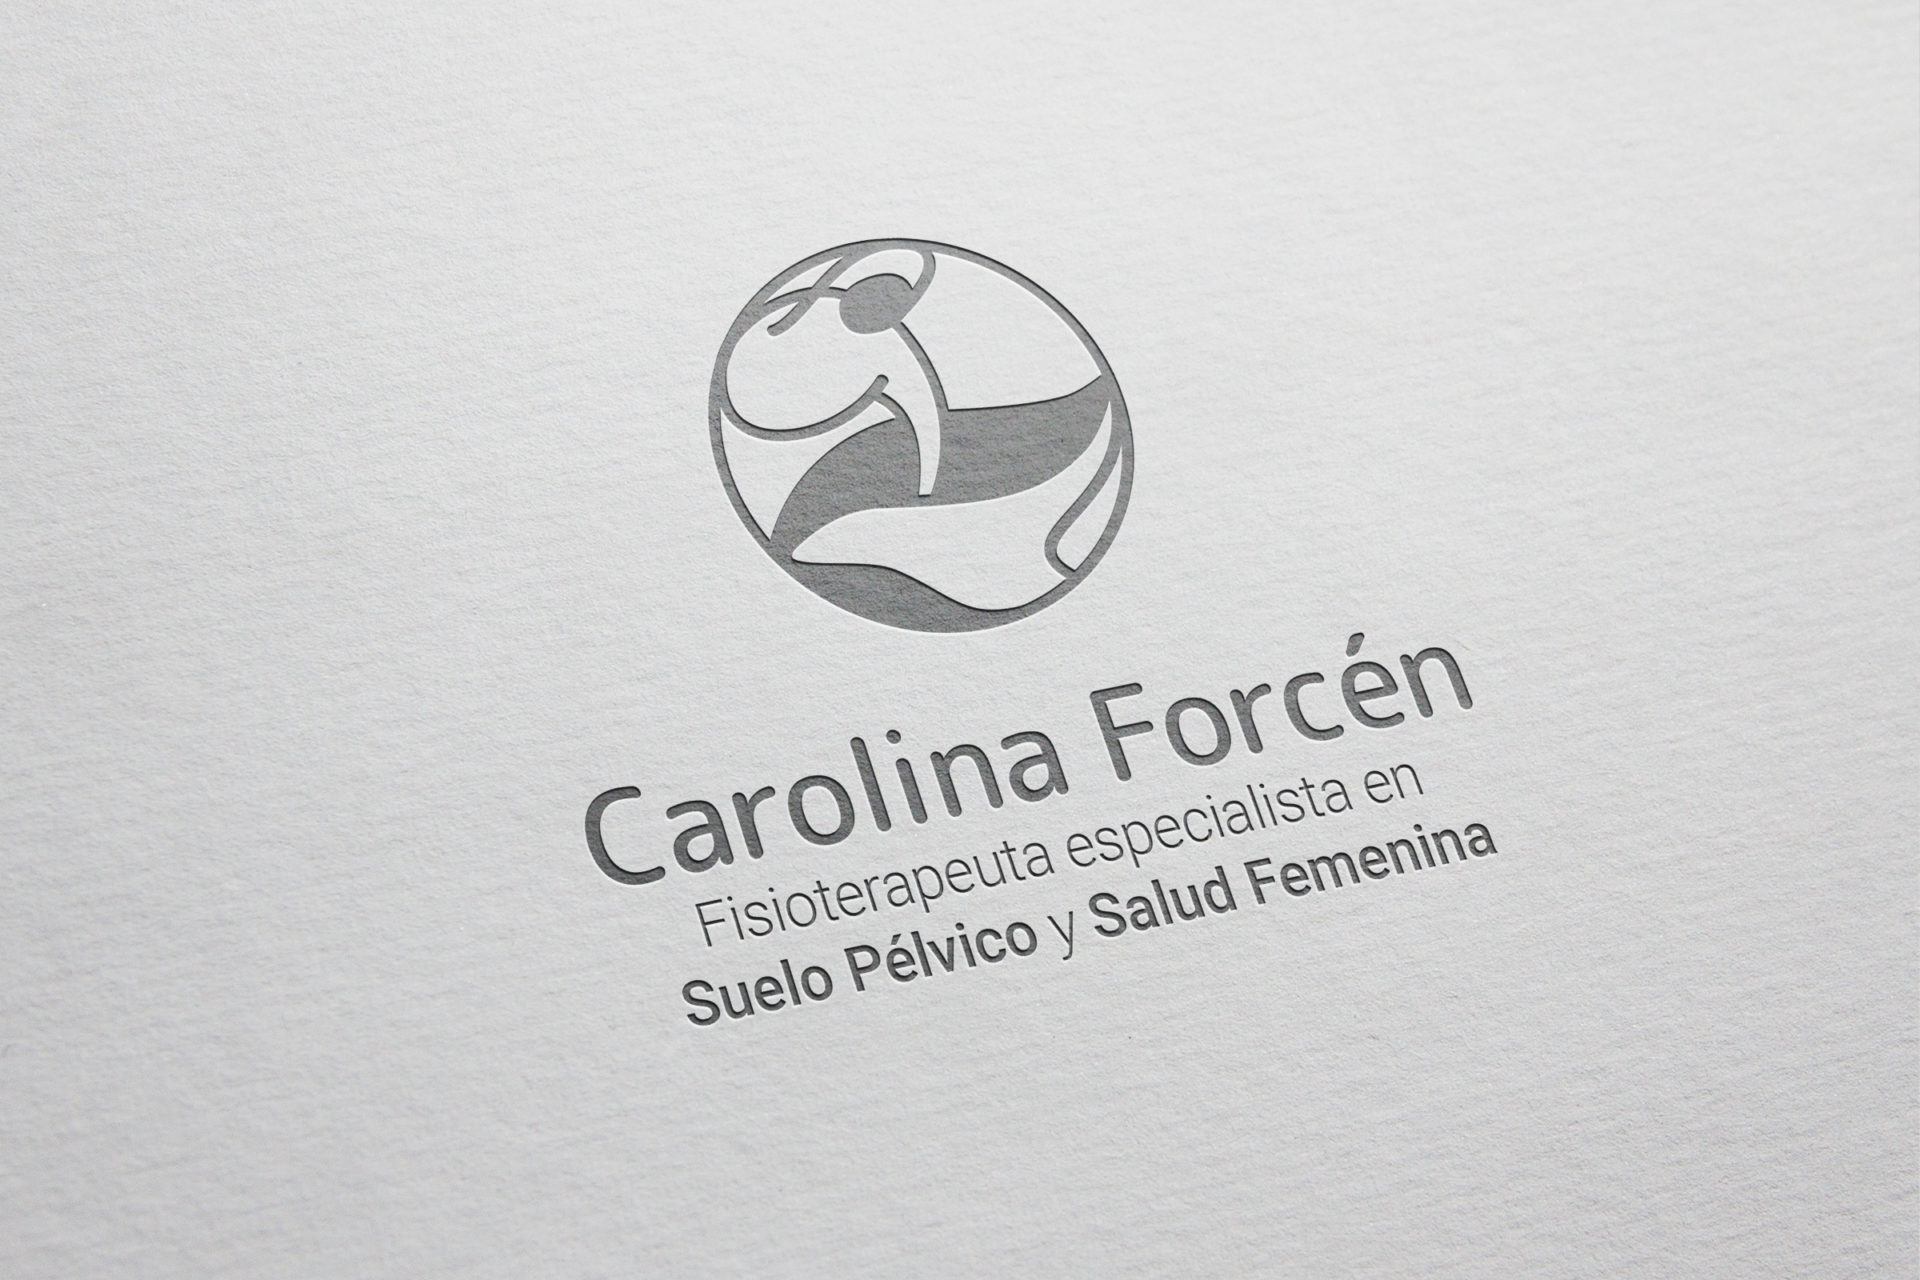 Logotipo Carolina Forcén especialista en fisioterapia de suelo pélvico